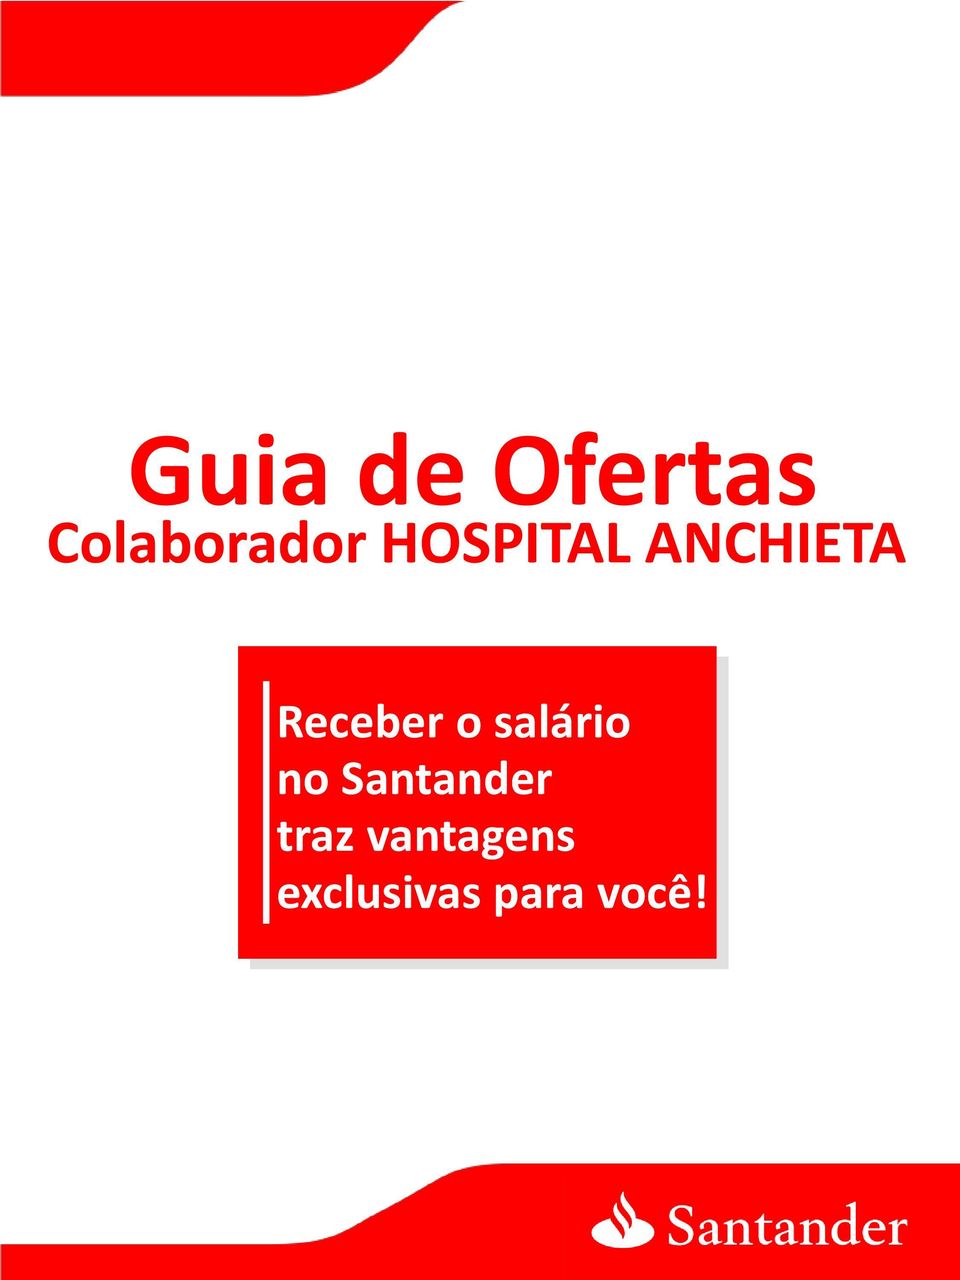 salário no Santander traz